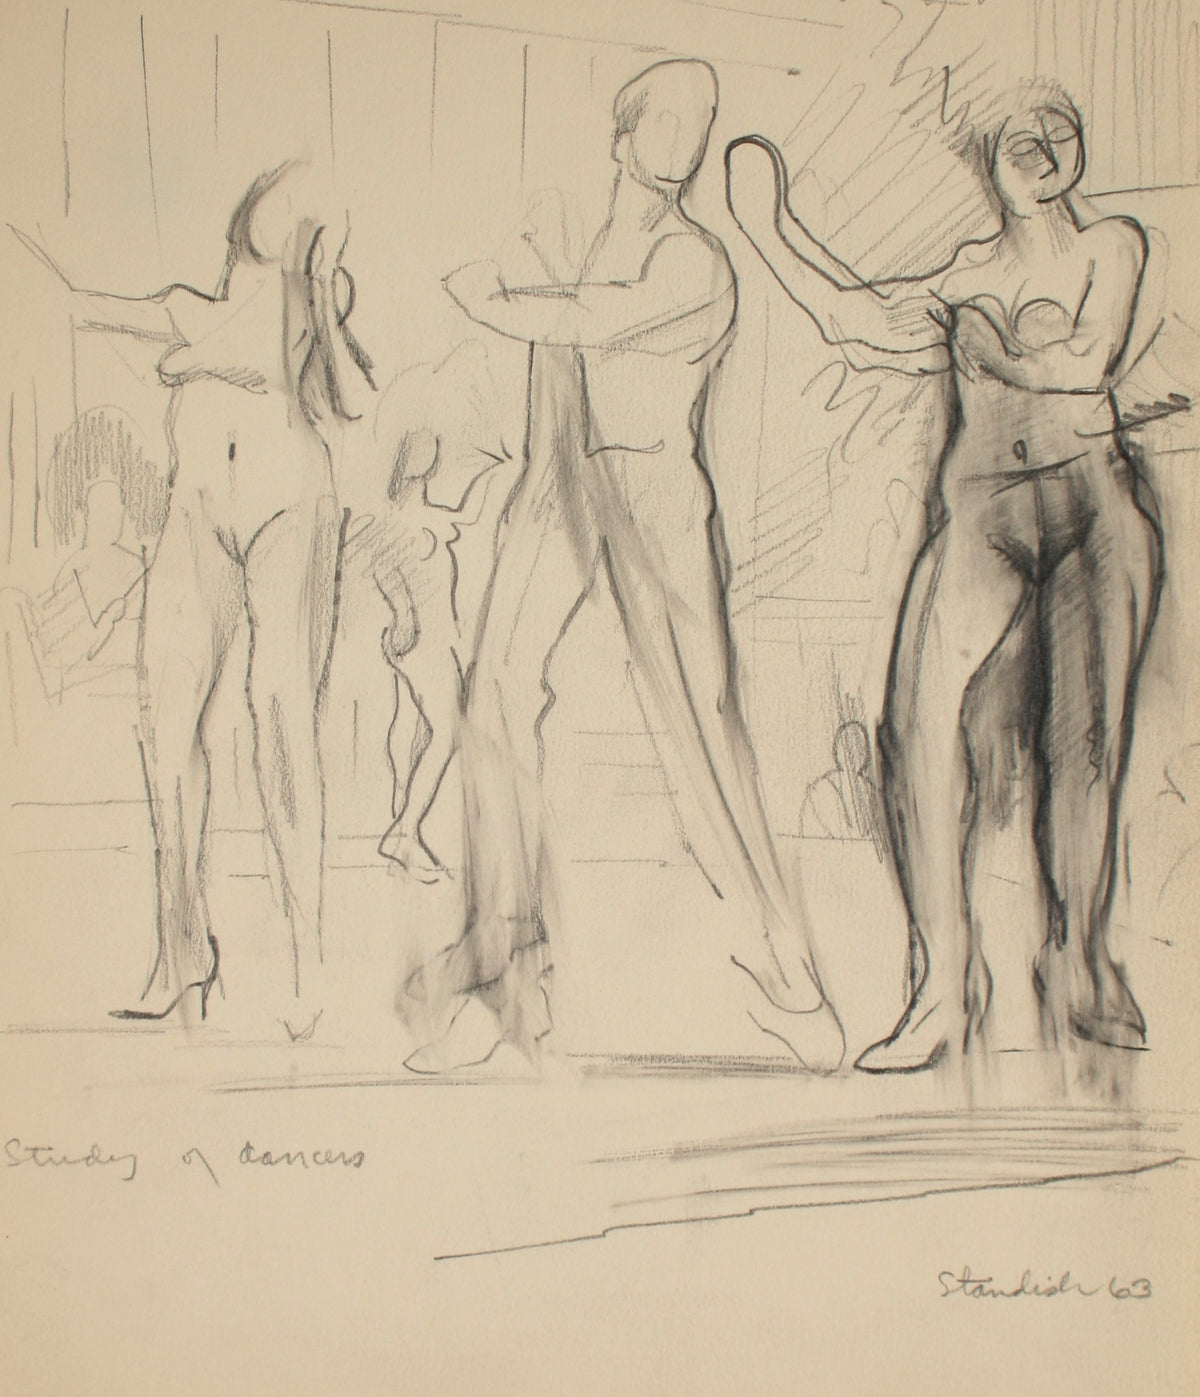 &lt;i&gt;Study of Dancers&lt;/i&gt; &lt;br&gt;1963 Graphite &lt;br&gt;&lt;br&gt;#71497